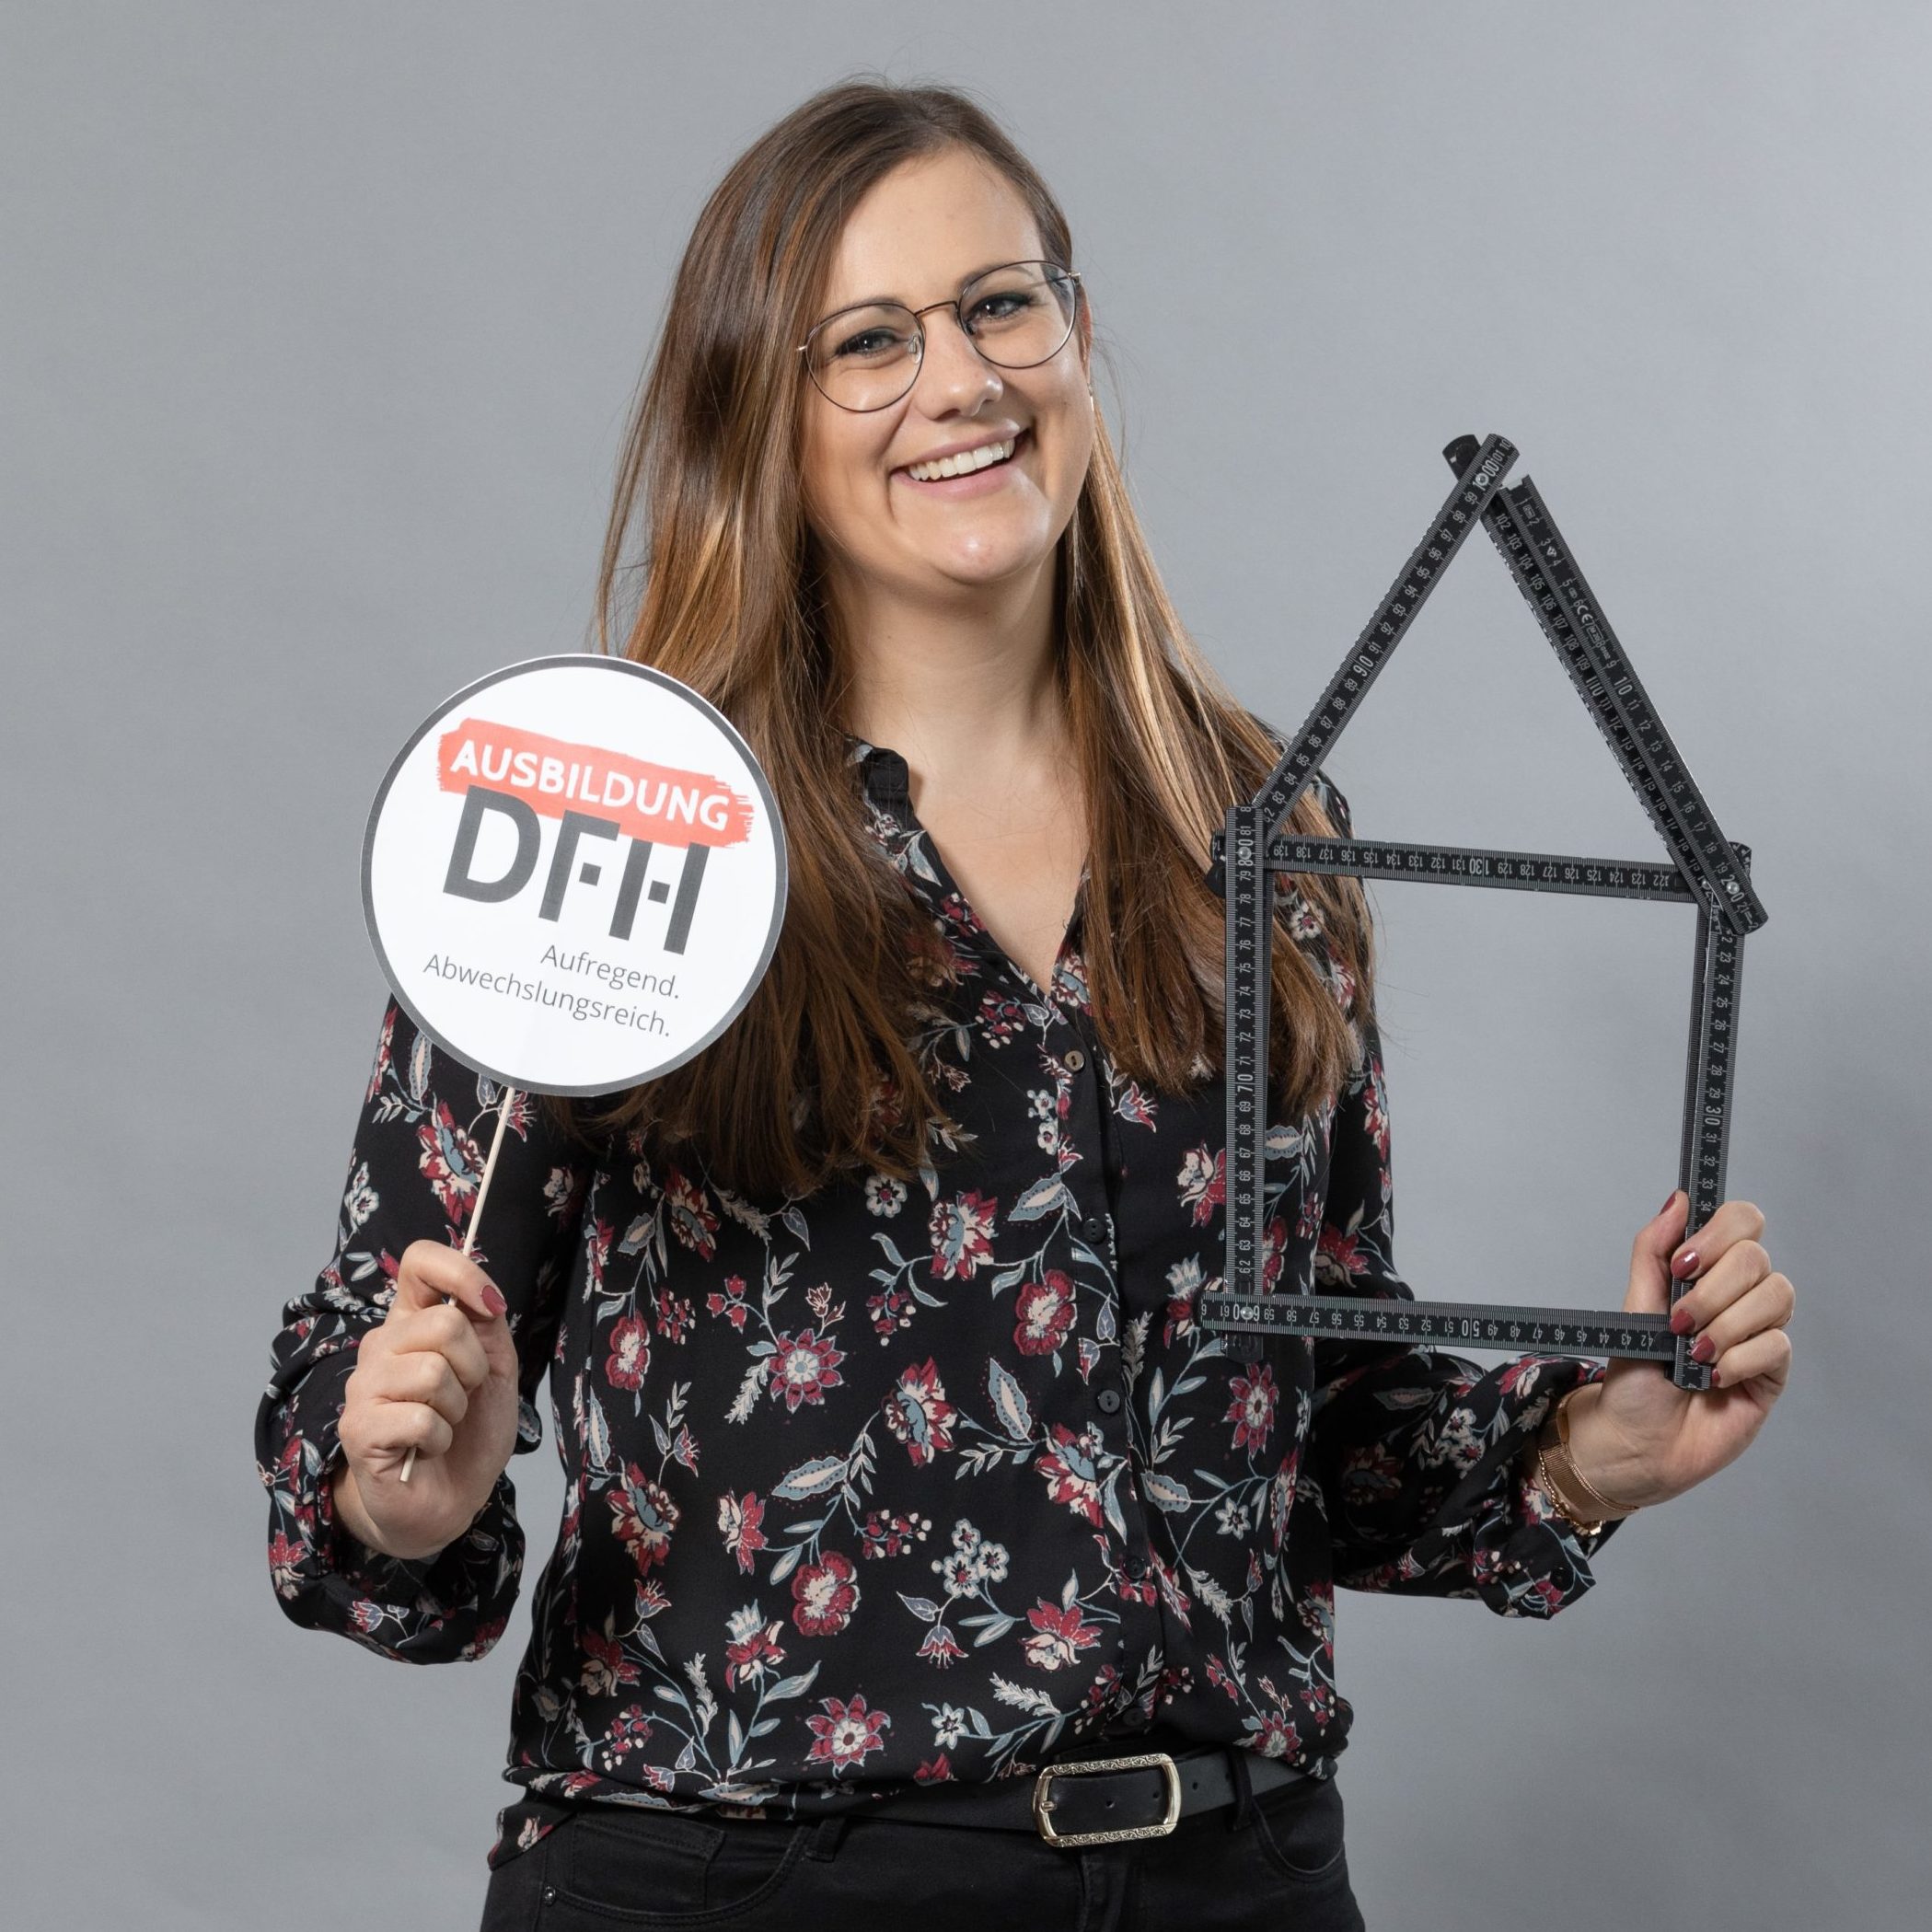 Anna Piroth, Ausbildern von der DFH GmbH